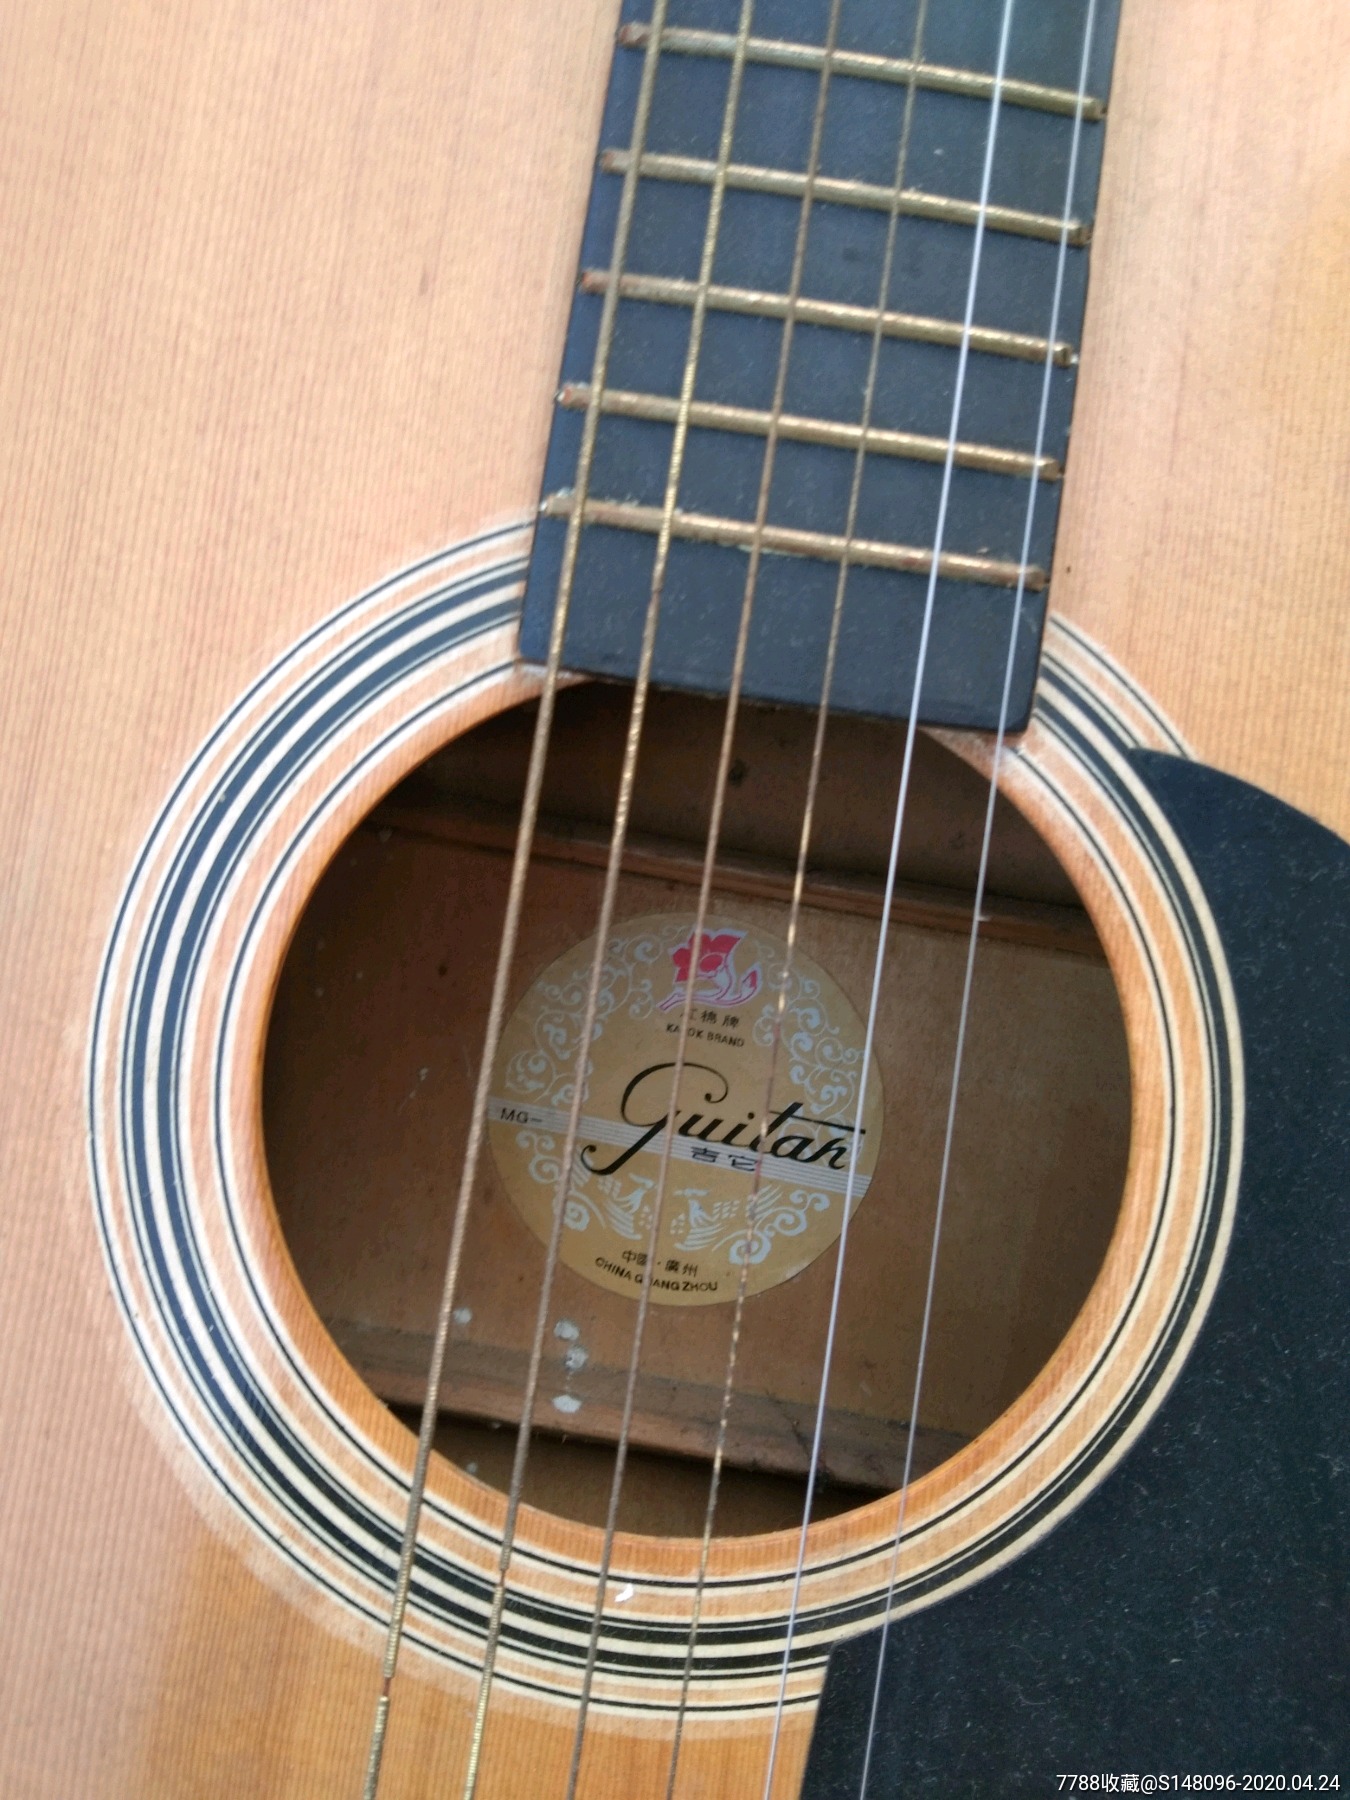 红棉吉他MG812图片